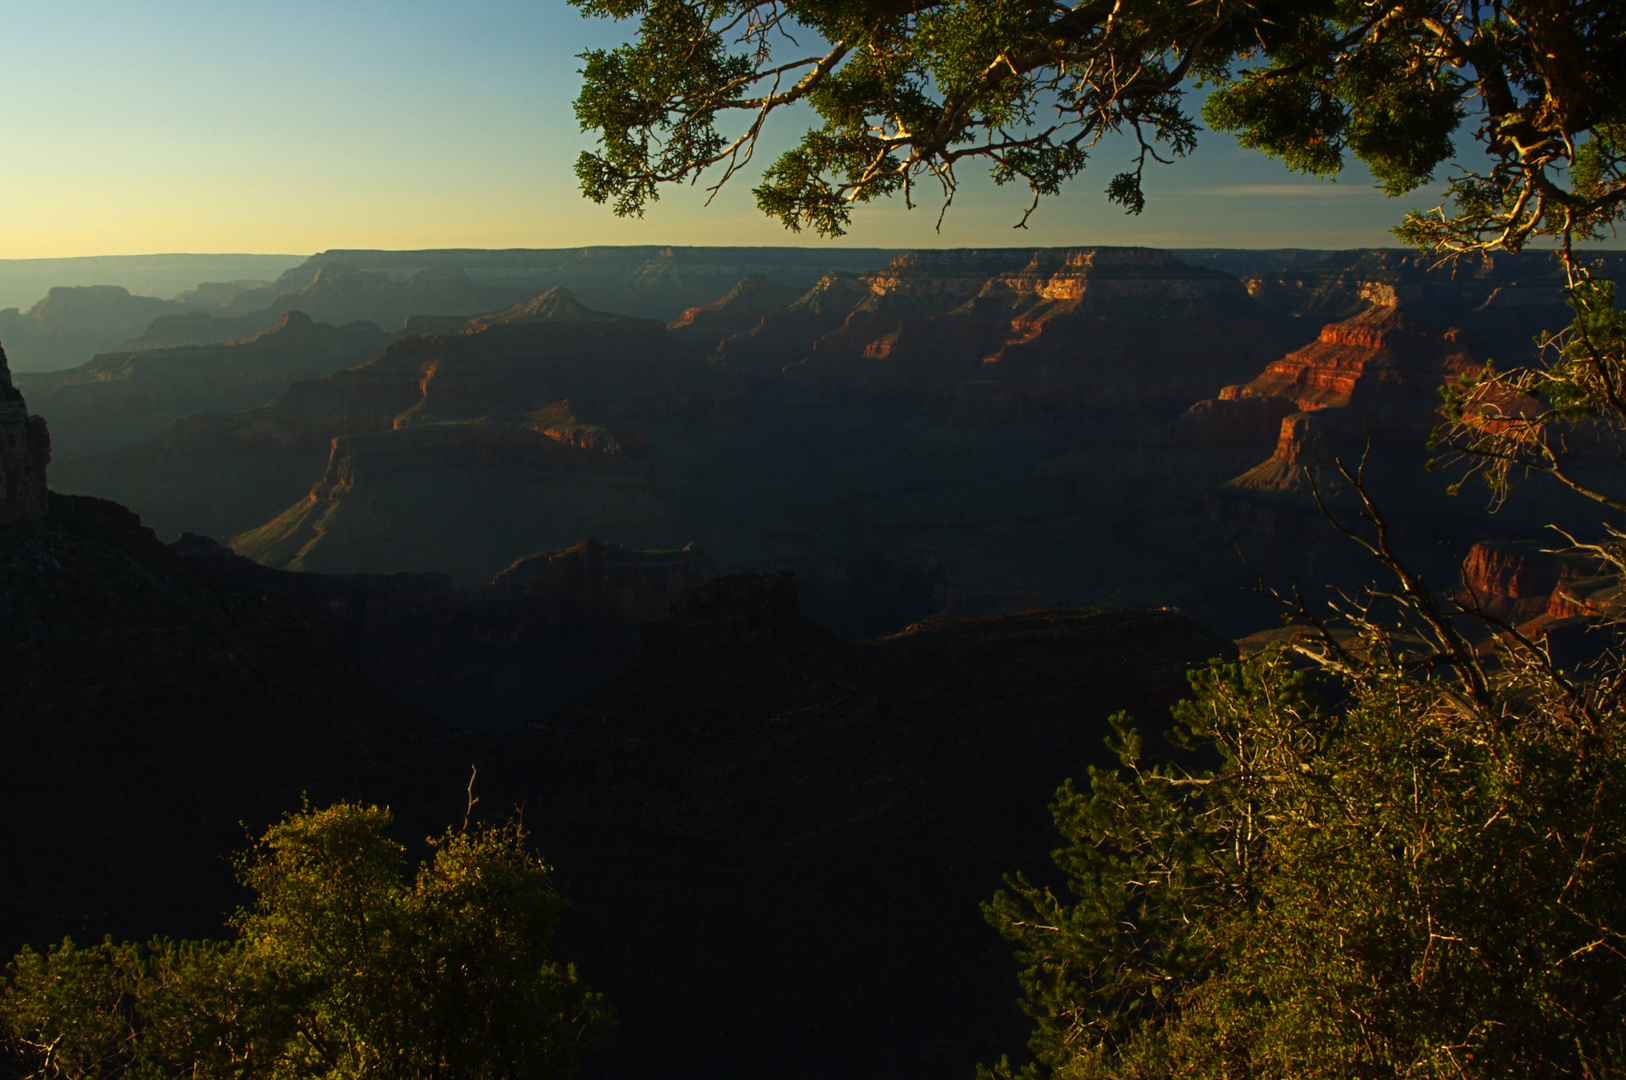 kurz vor dem Sonnenuntergang am Grand Canyon